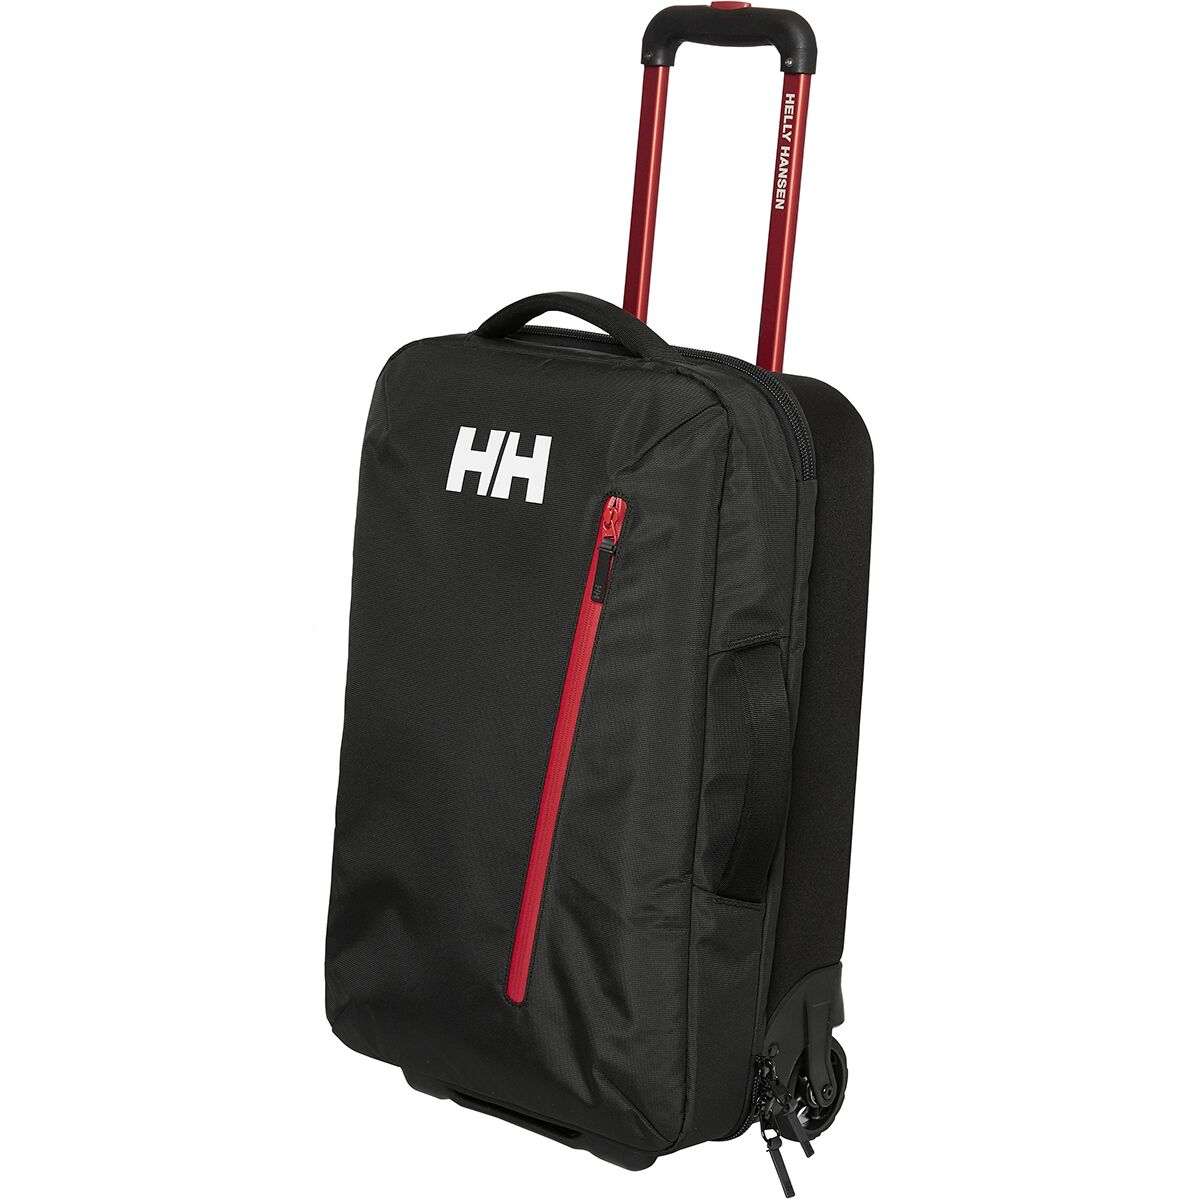 Ga naar het circuit embargo bevestigen Helly Hansen Sport EXP Trolley 100L Rolling Bag - Travel